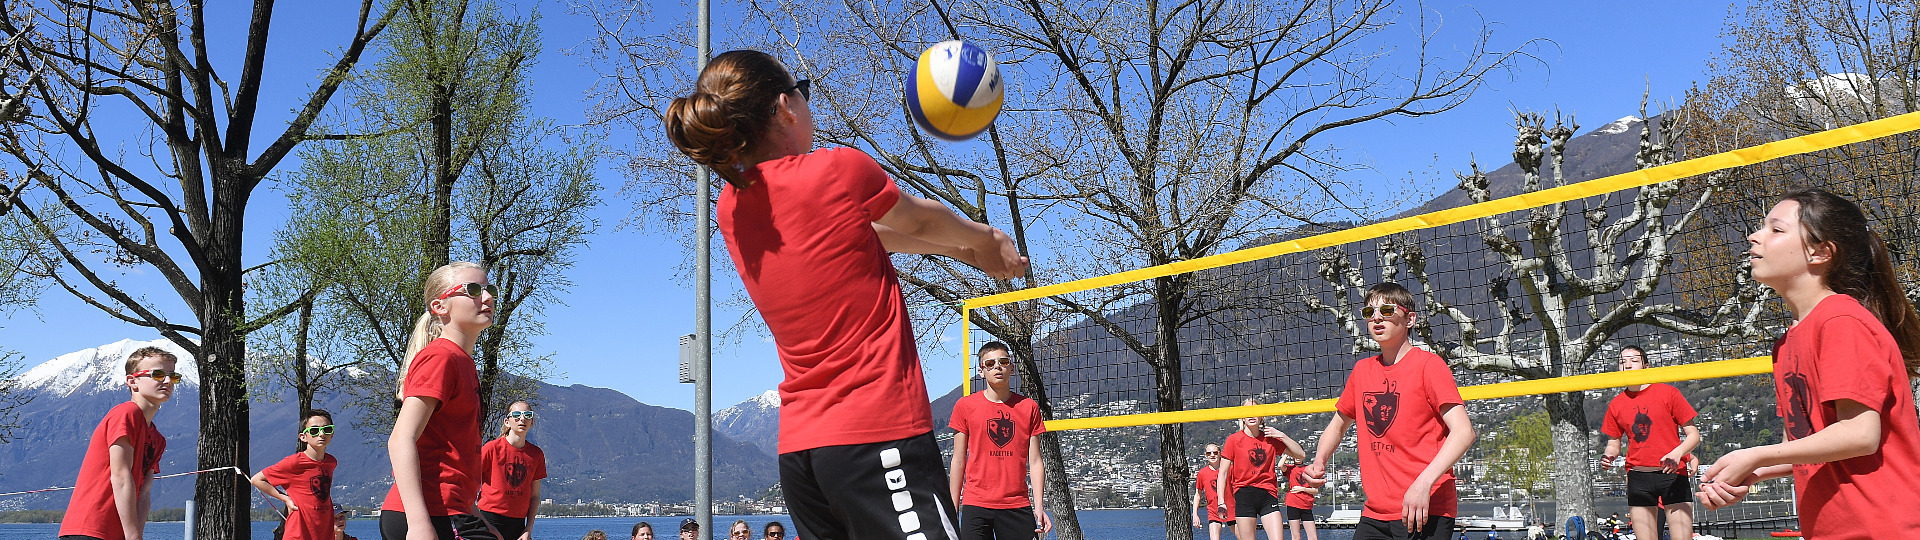 Volleyball - Kadetten Thun